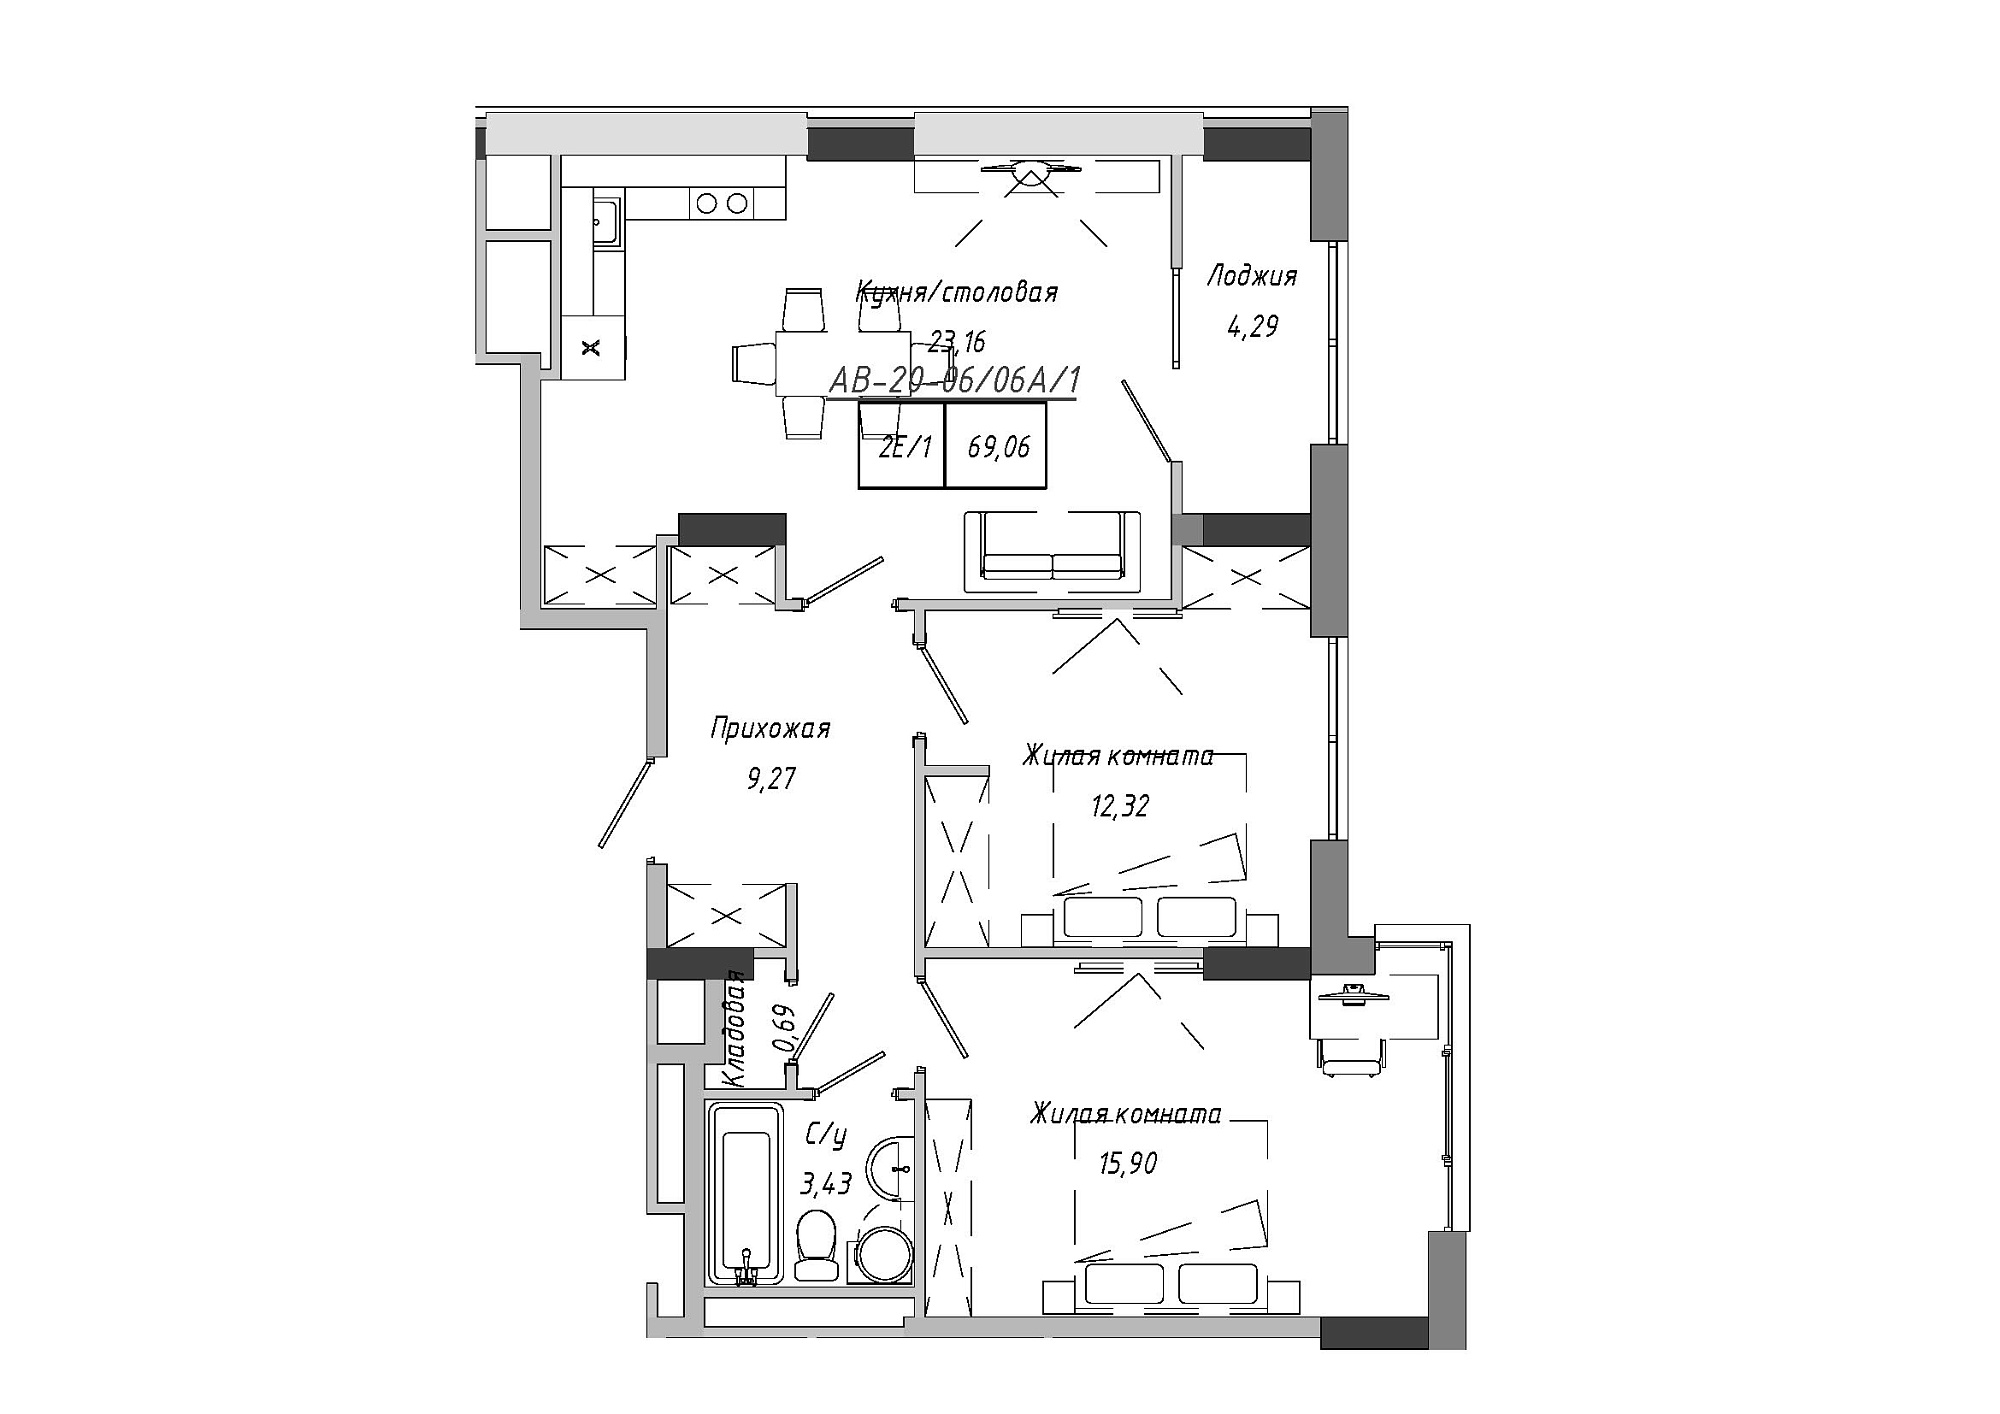 Планировка 2-к квартира площей 42.85м2, AB-20-06/0006а.